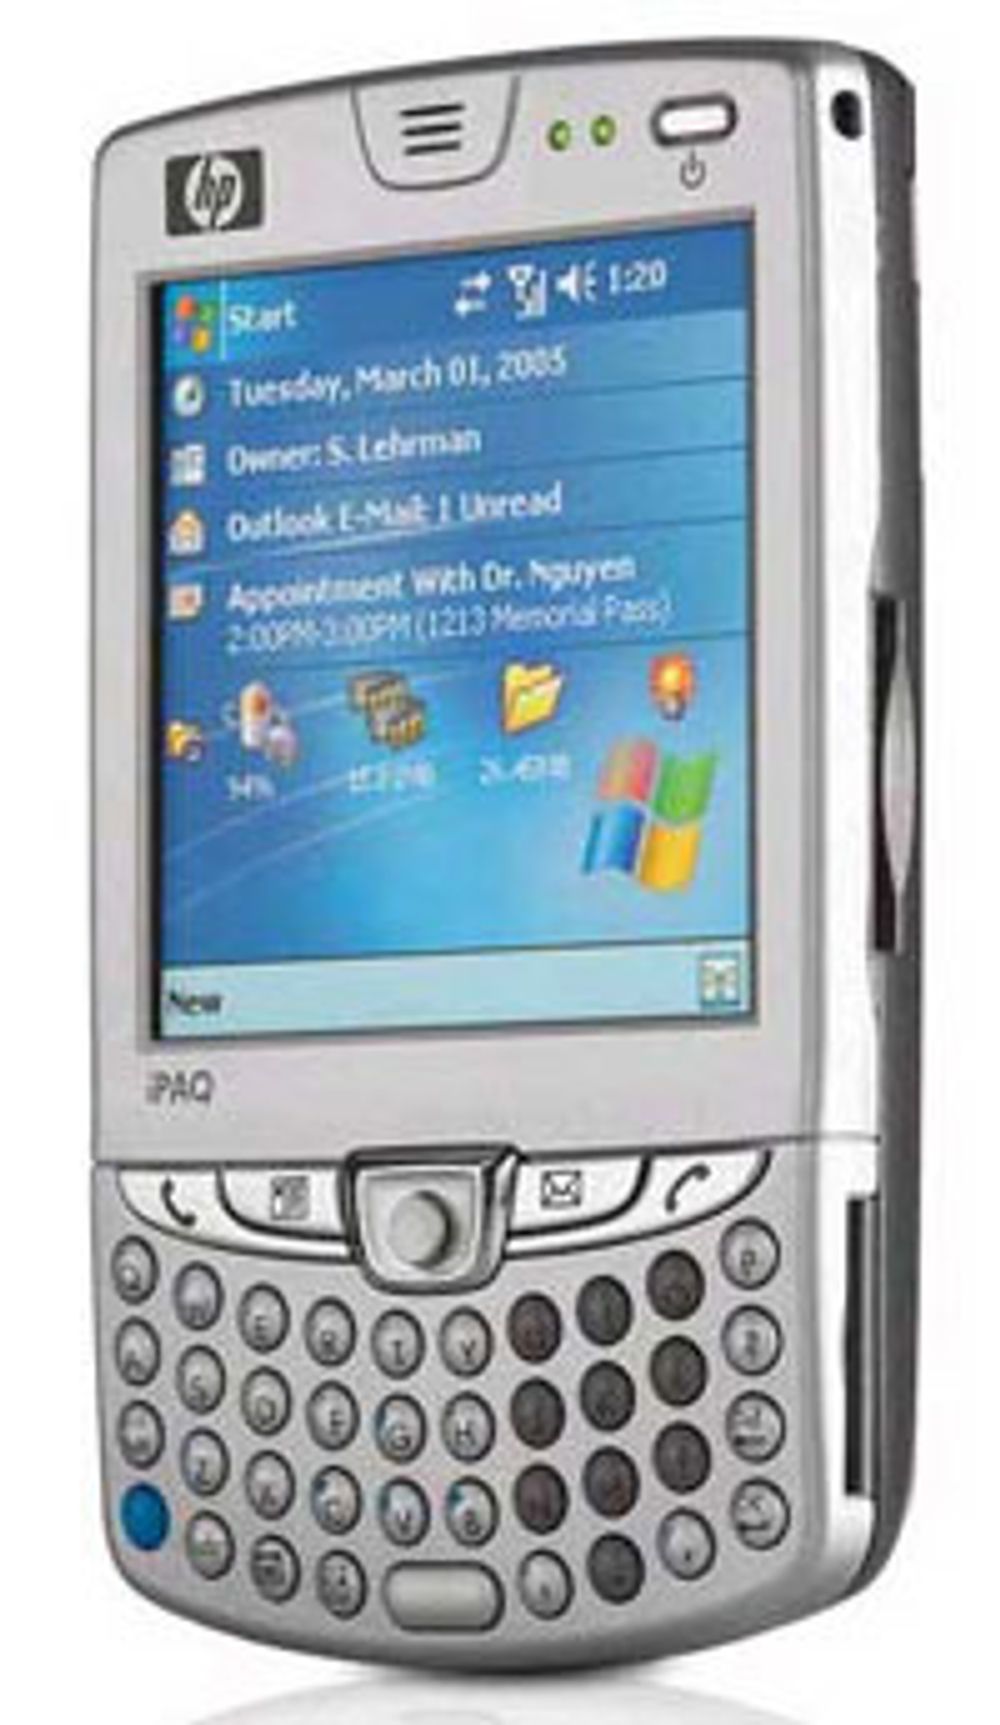 HP er nykommere på mobiltelefon, men skjønner seg på teknologi. Denne telefonen har til og med EDGE.